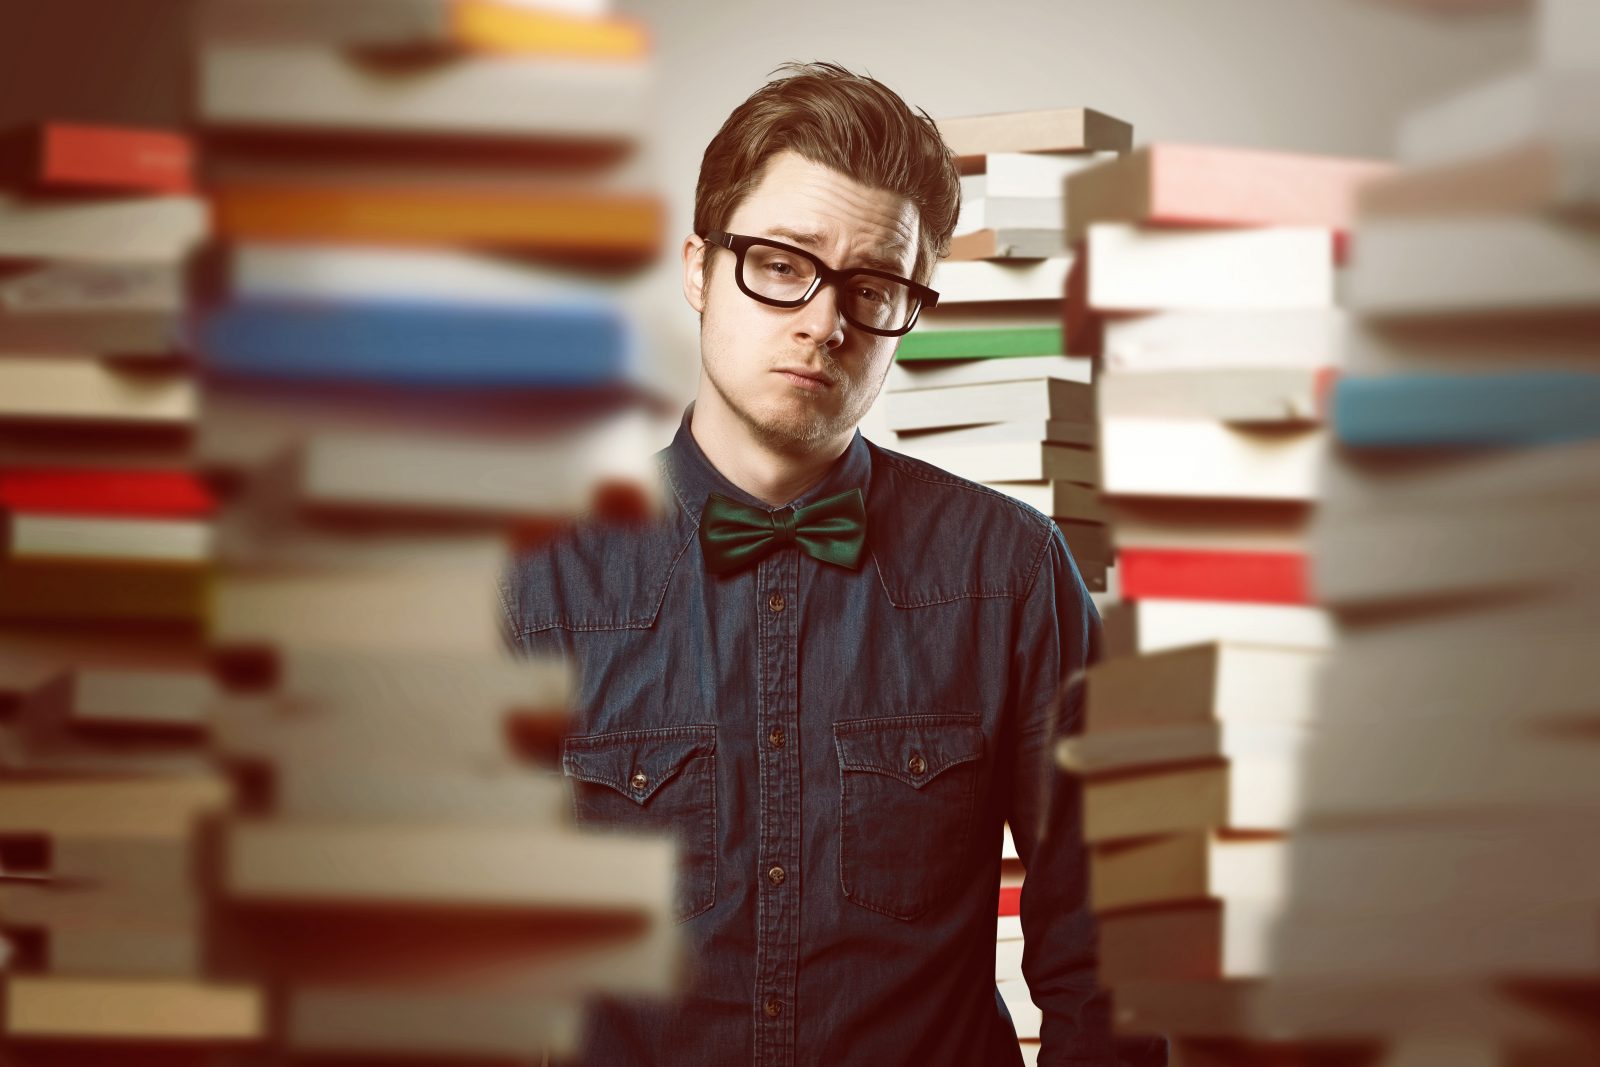 Student between book stacks